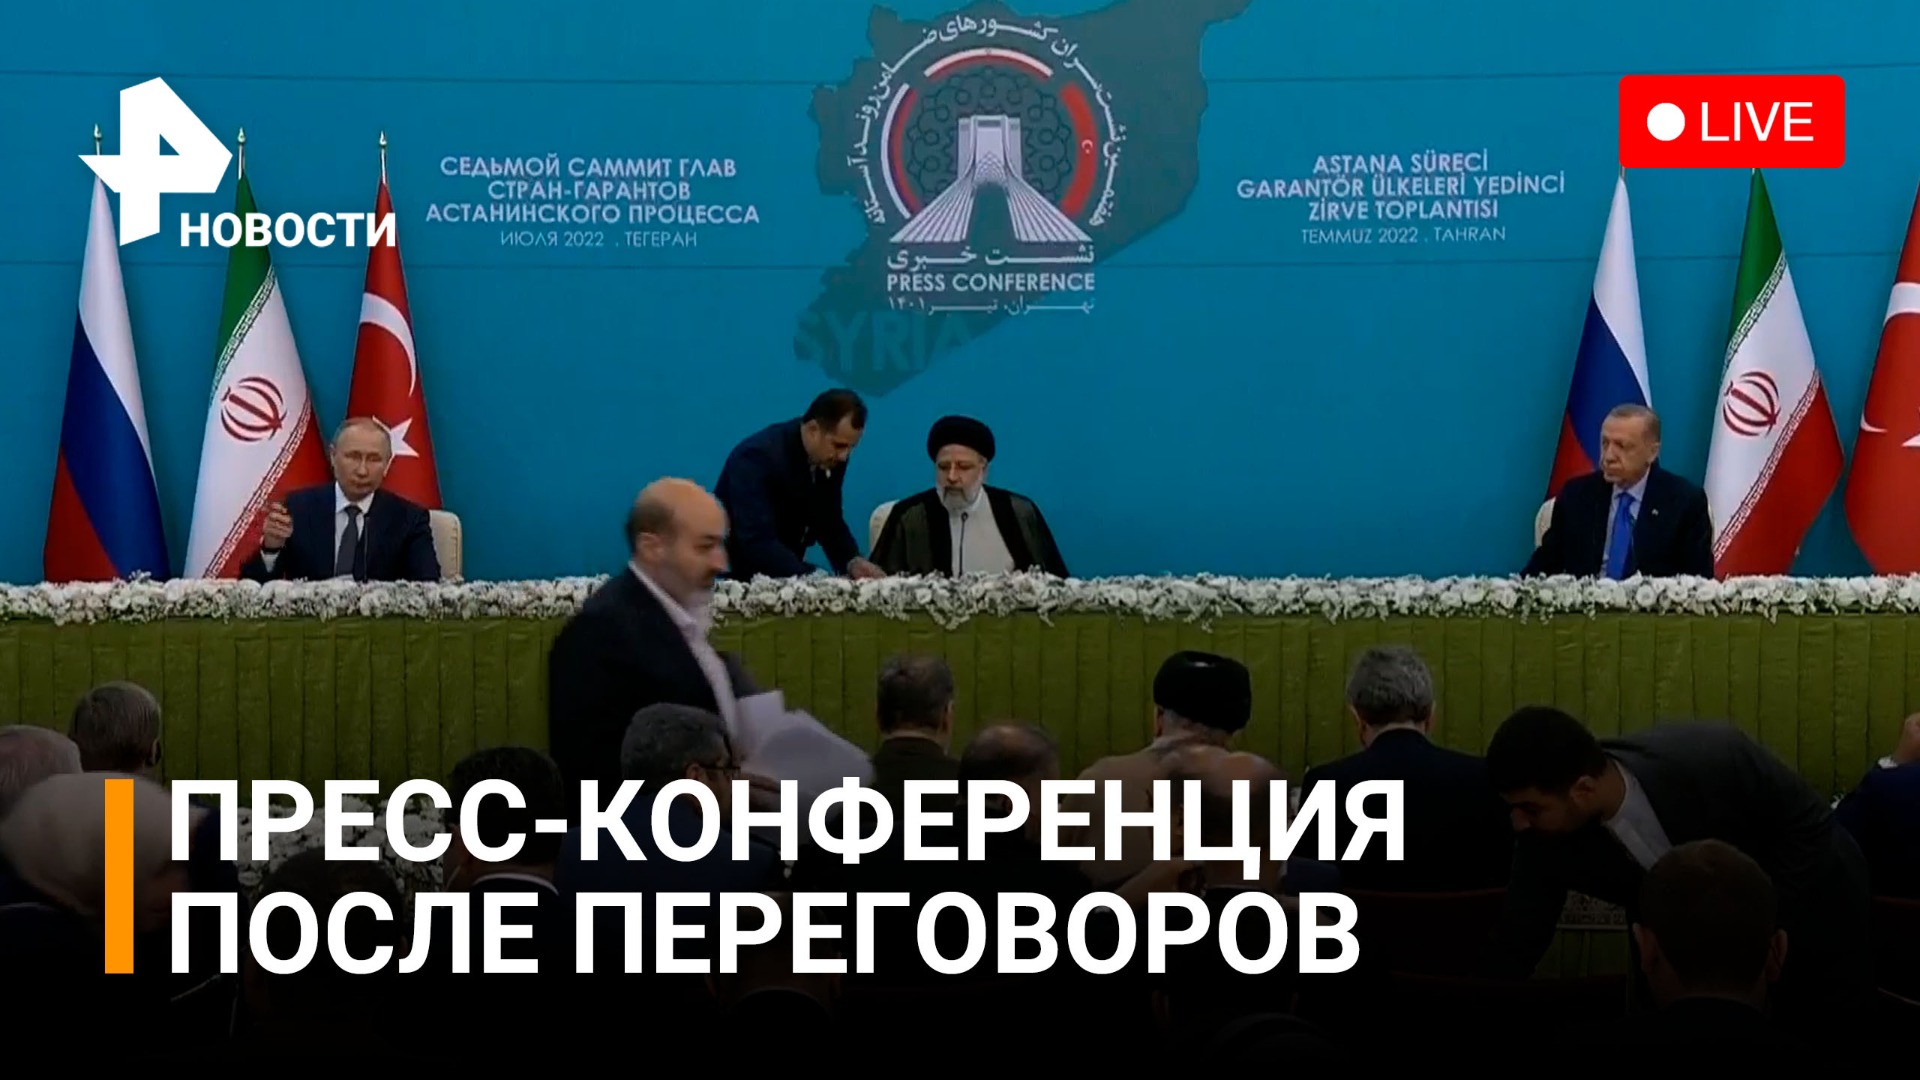 Пресс-конференция Путина, Эрдогана и Раиси по итогам встречи в Иране. Прямой эфир / РЕН Новости 